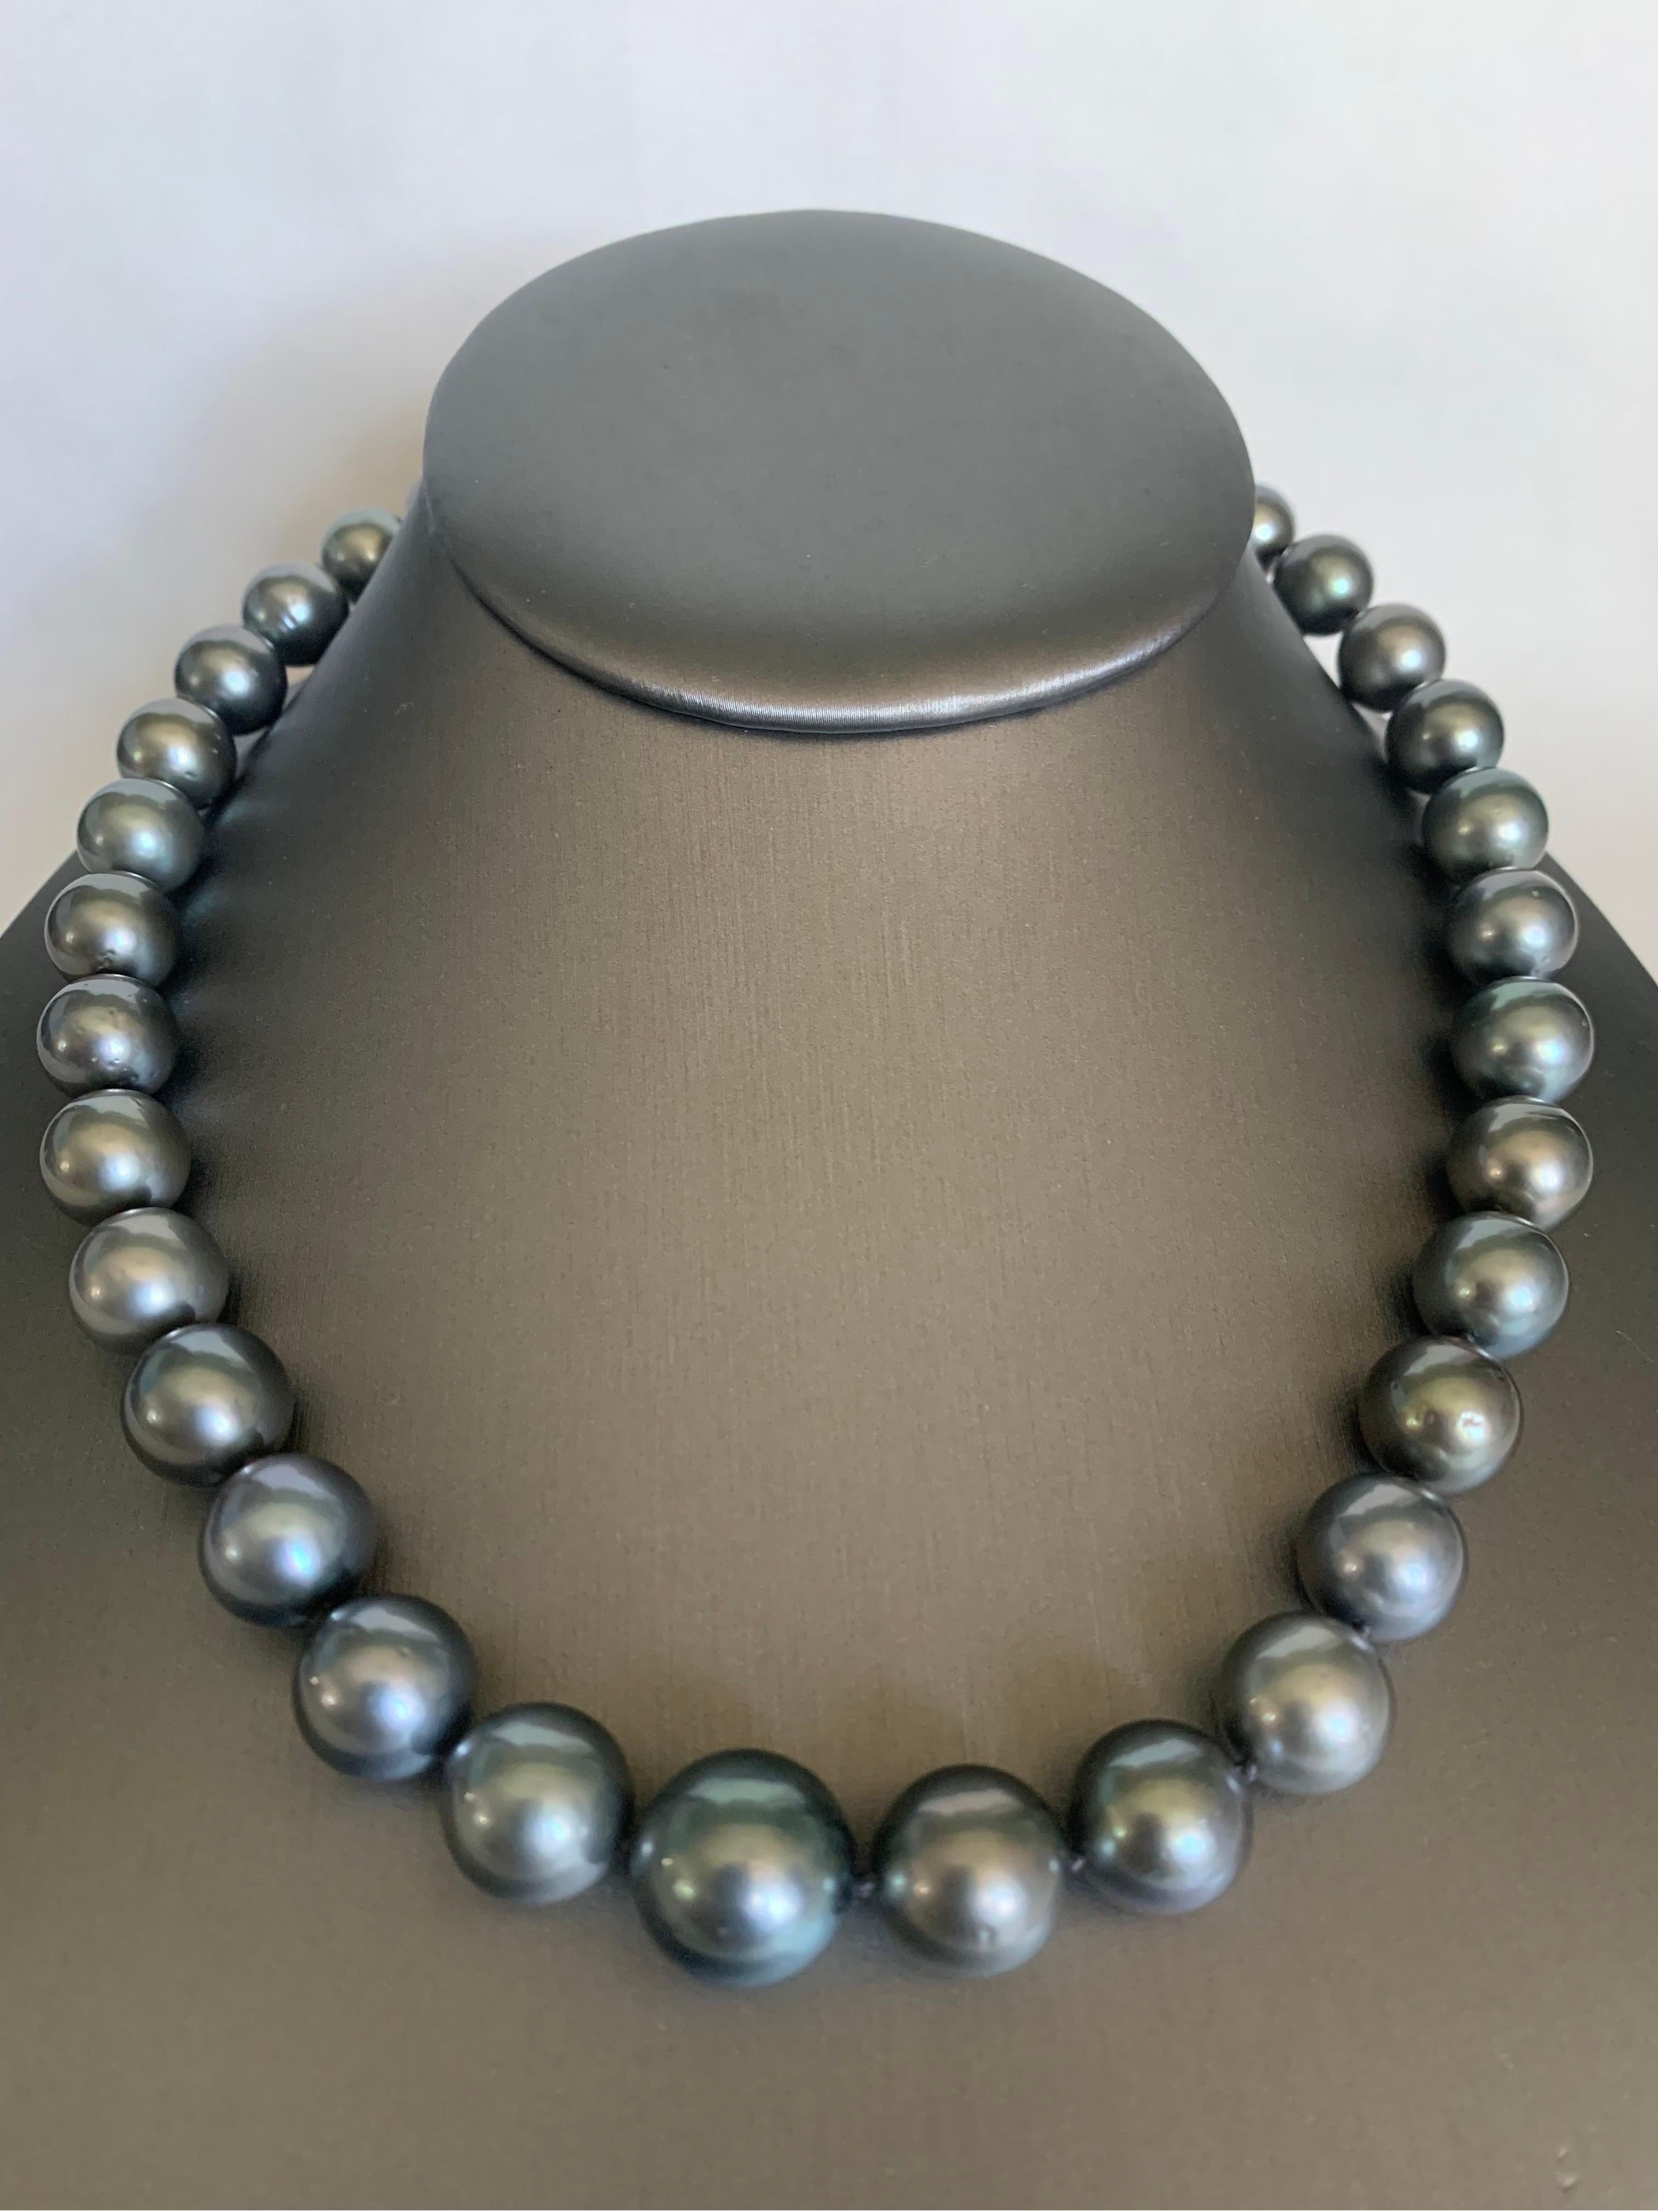 Werten Sie Ihren Look mit einer zeitlosen, abgestuften Perlenkette auf. Diese 17-18 Zoll lange Strangkette ist vollständig geknotet und von Hand mit passender Seidenkordel aufgefädelt. Das Collier besteht aus 35 glänzenden Tahiti-Perlen von 10-13,5